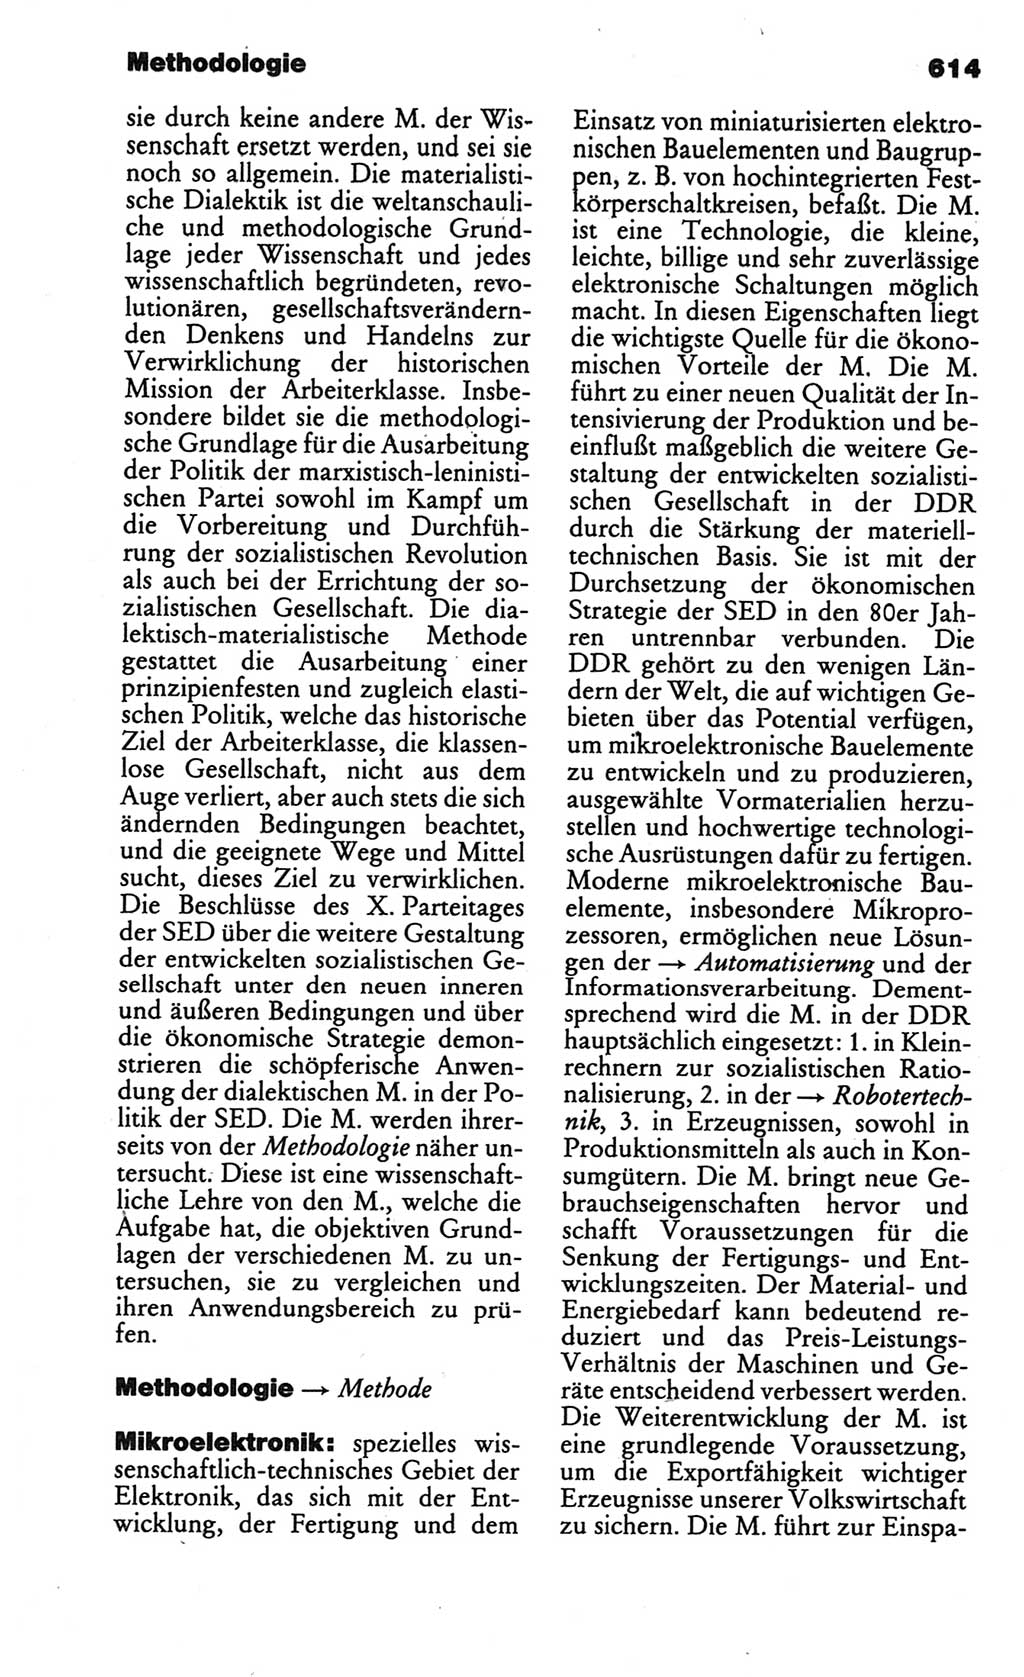 Kleines politisches Wörterbuch [Deutsche Demokratische Republik (DDR)] 1986, Seite 614 (Kl. pol. Wb. DDR 1986, S. 614)